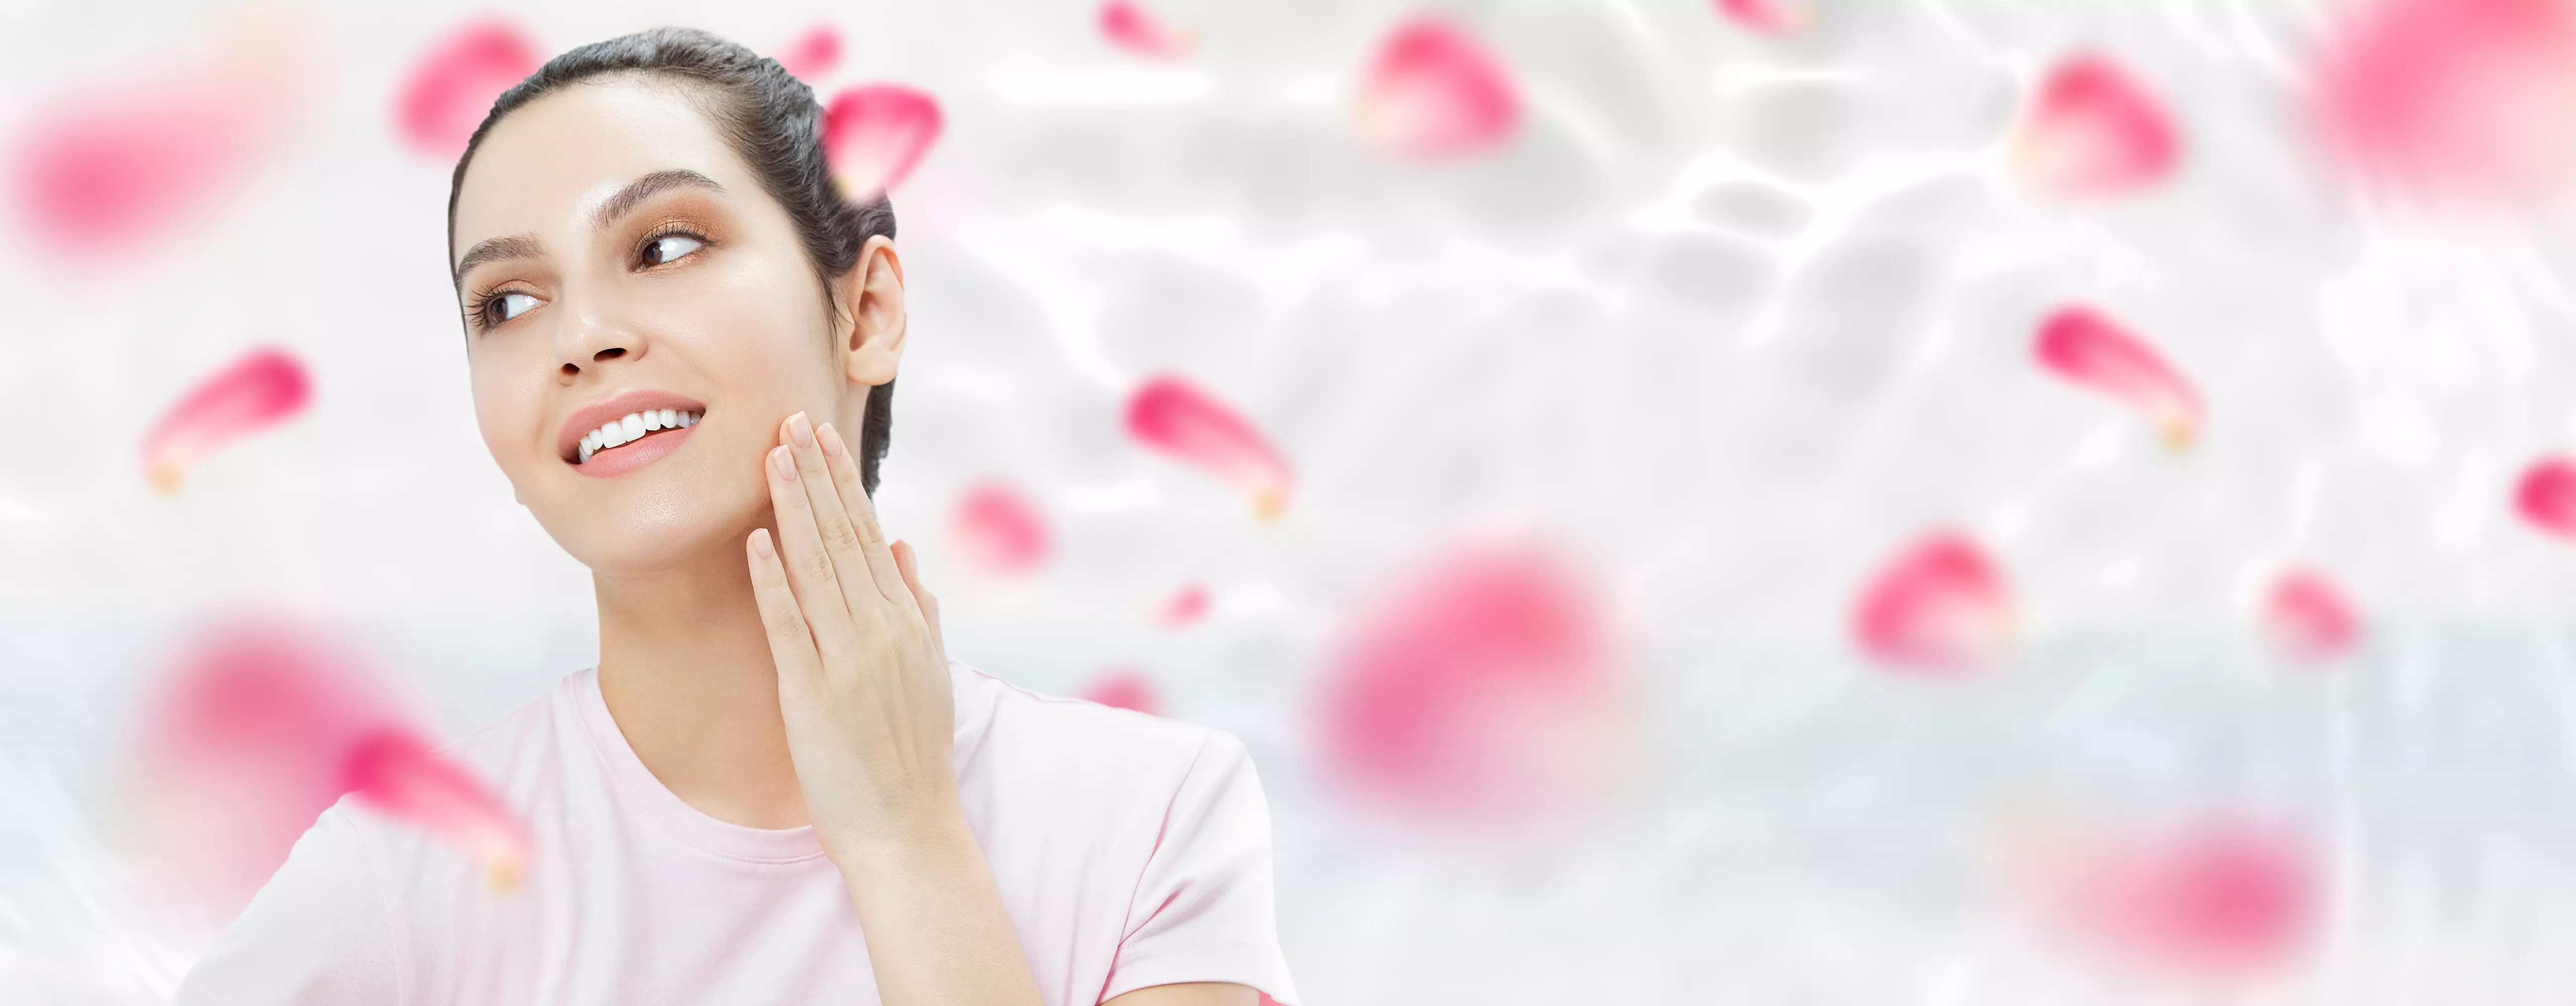 7 usos, propiedades y beneficios del agua de rosas para tu rutina de belleza